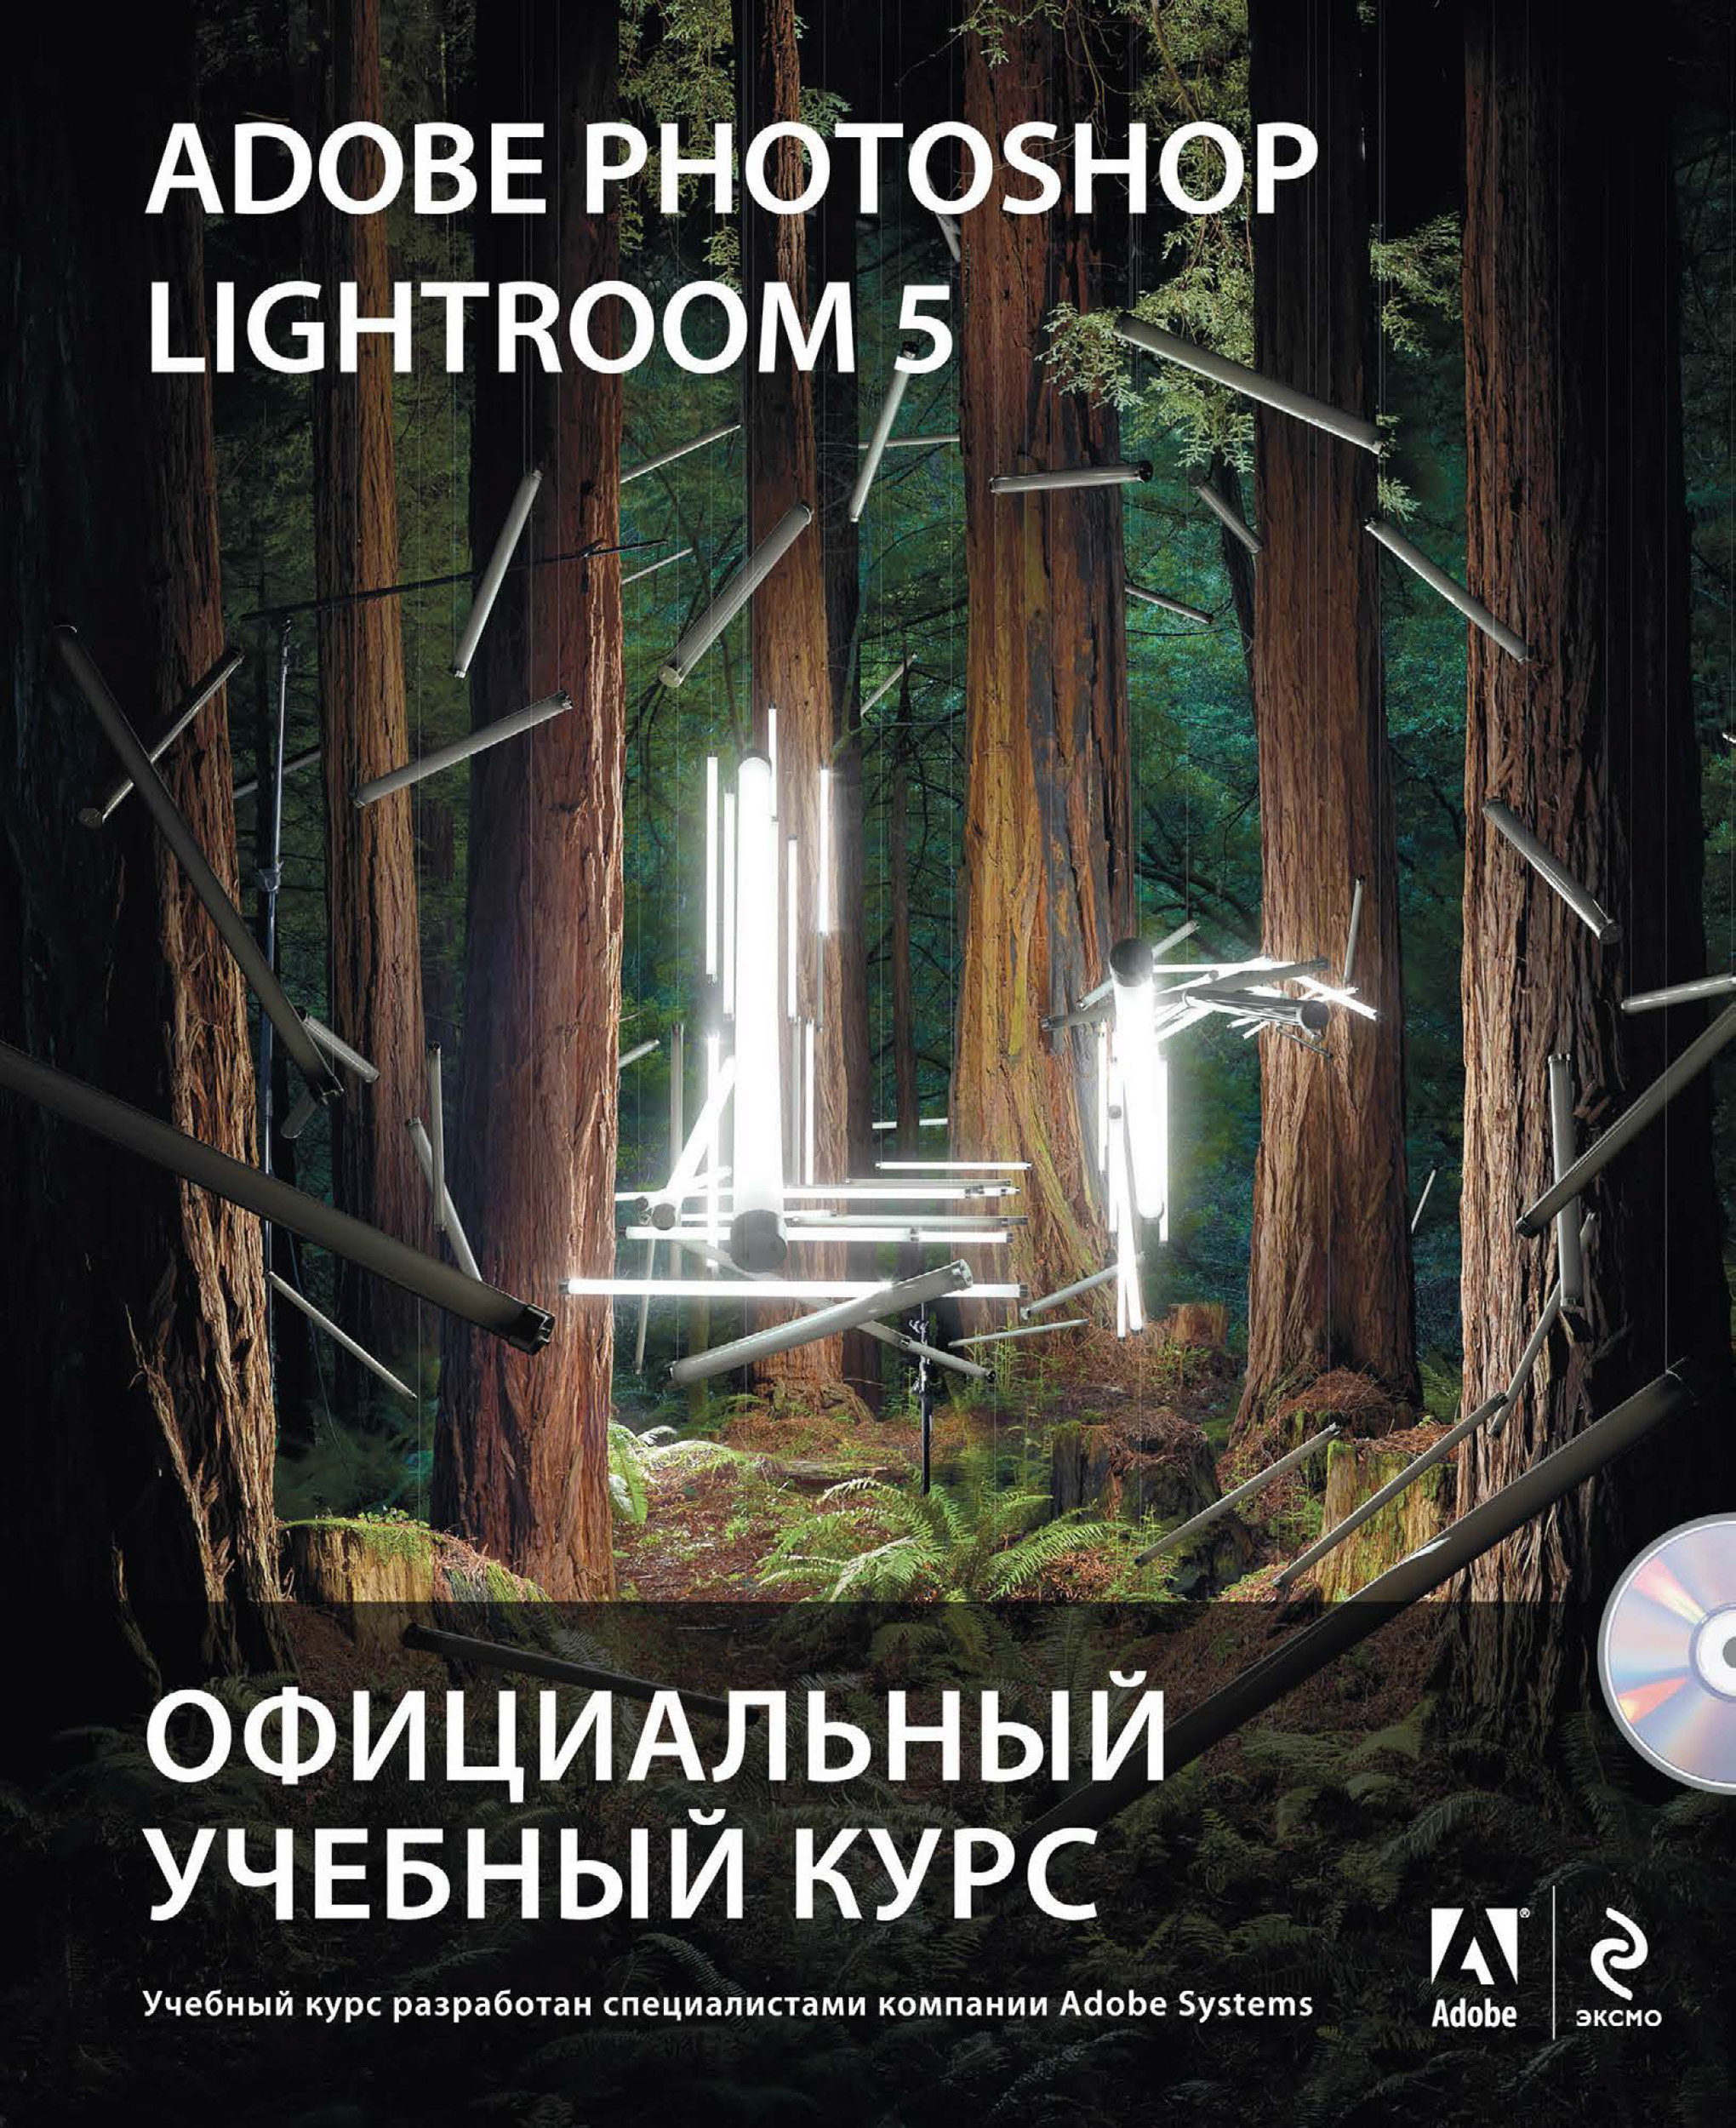 Adobe Photoshop Lightroom 5.Официальный учебный курс